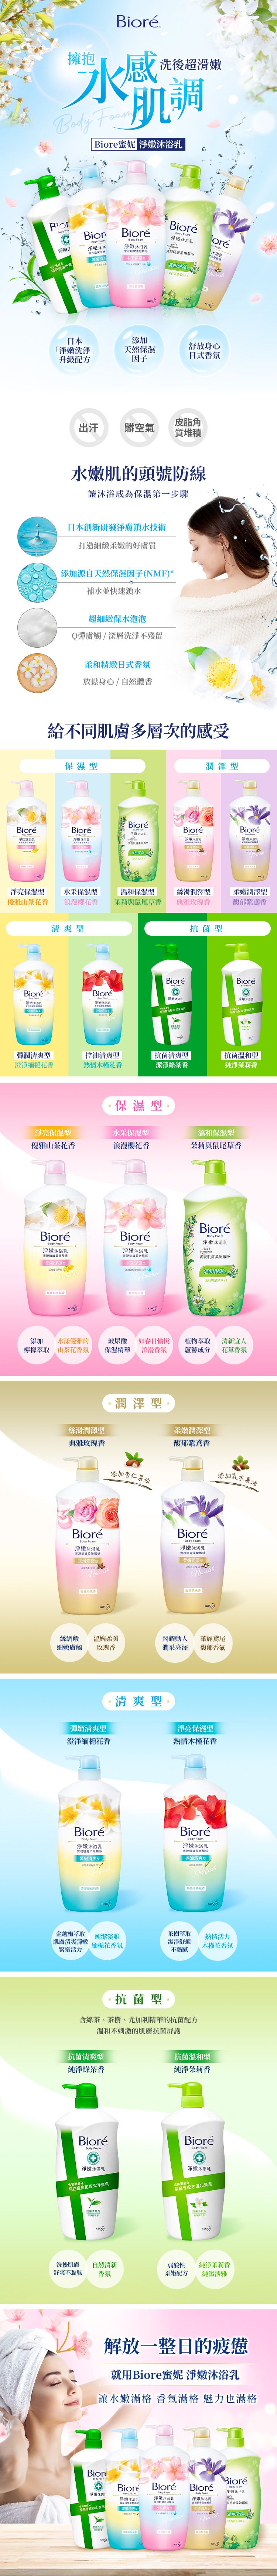 沐浴乳 身體清潔 japan 身體清潔 沐浴乳 身體保養